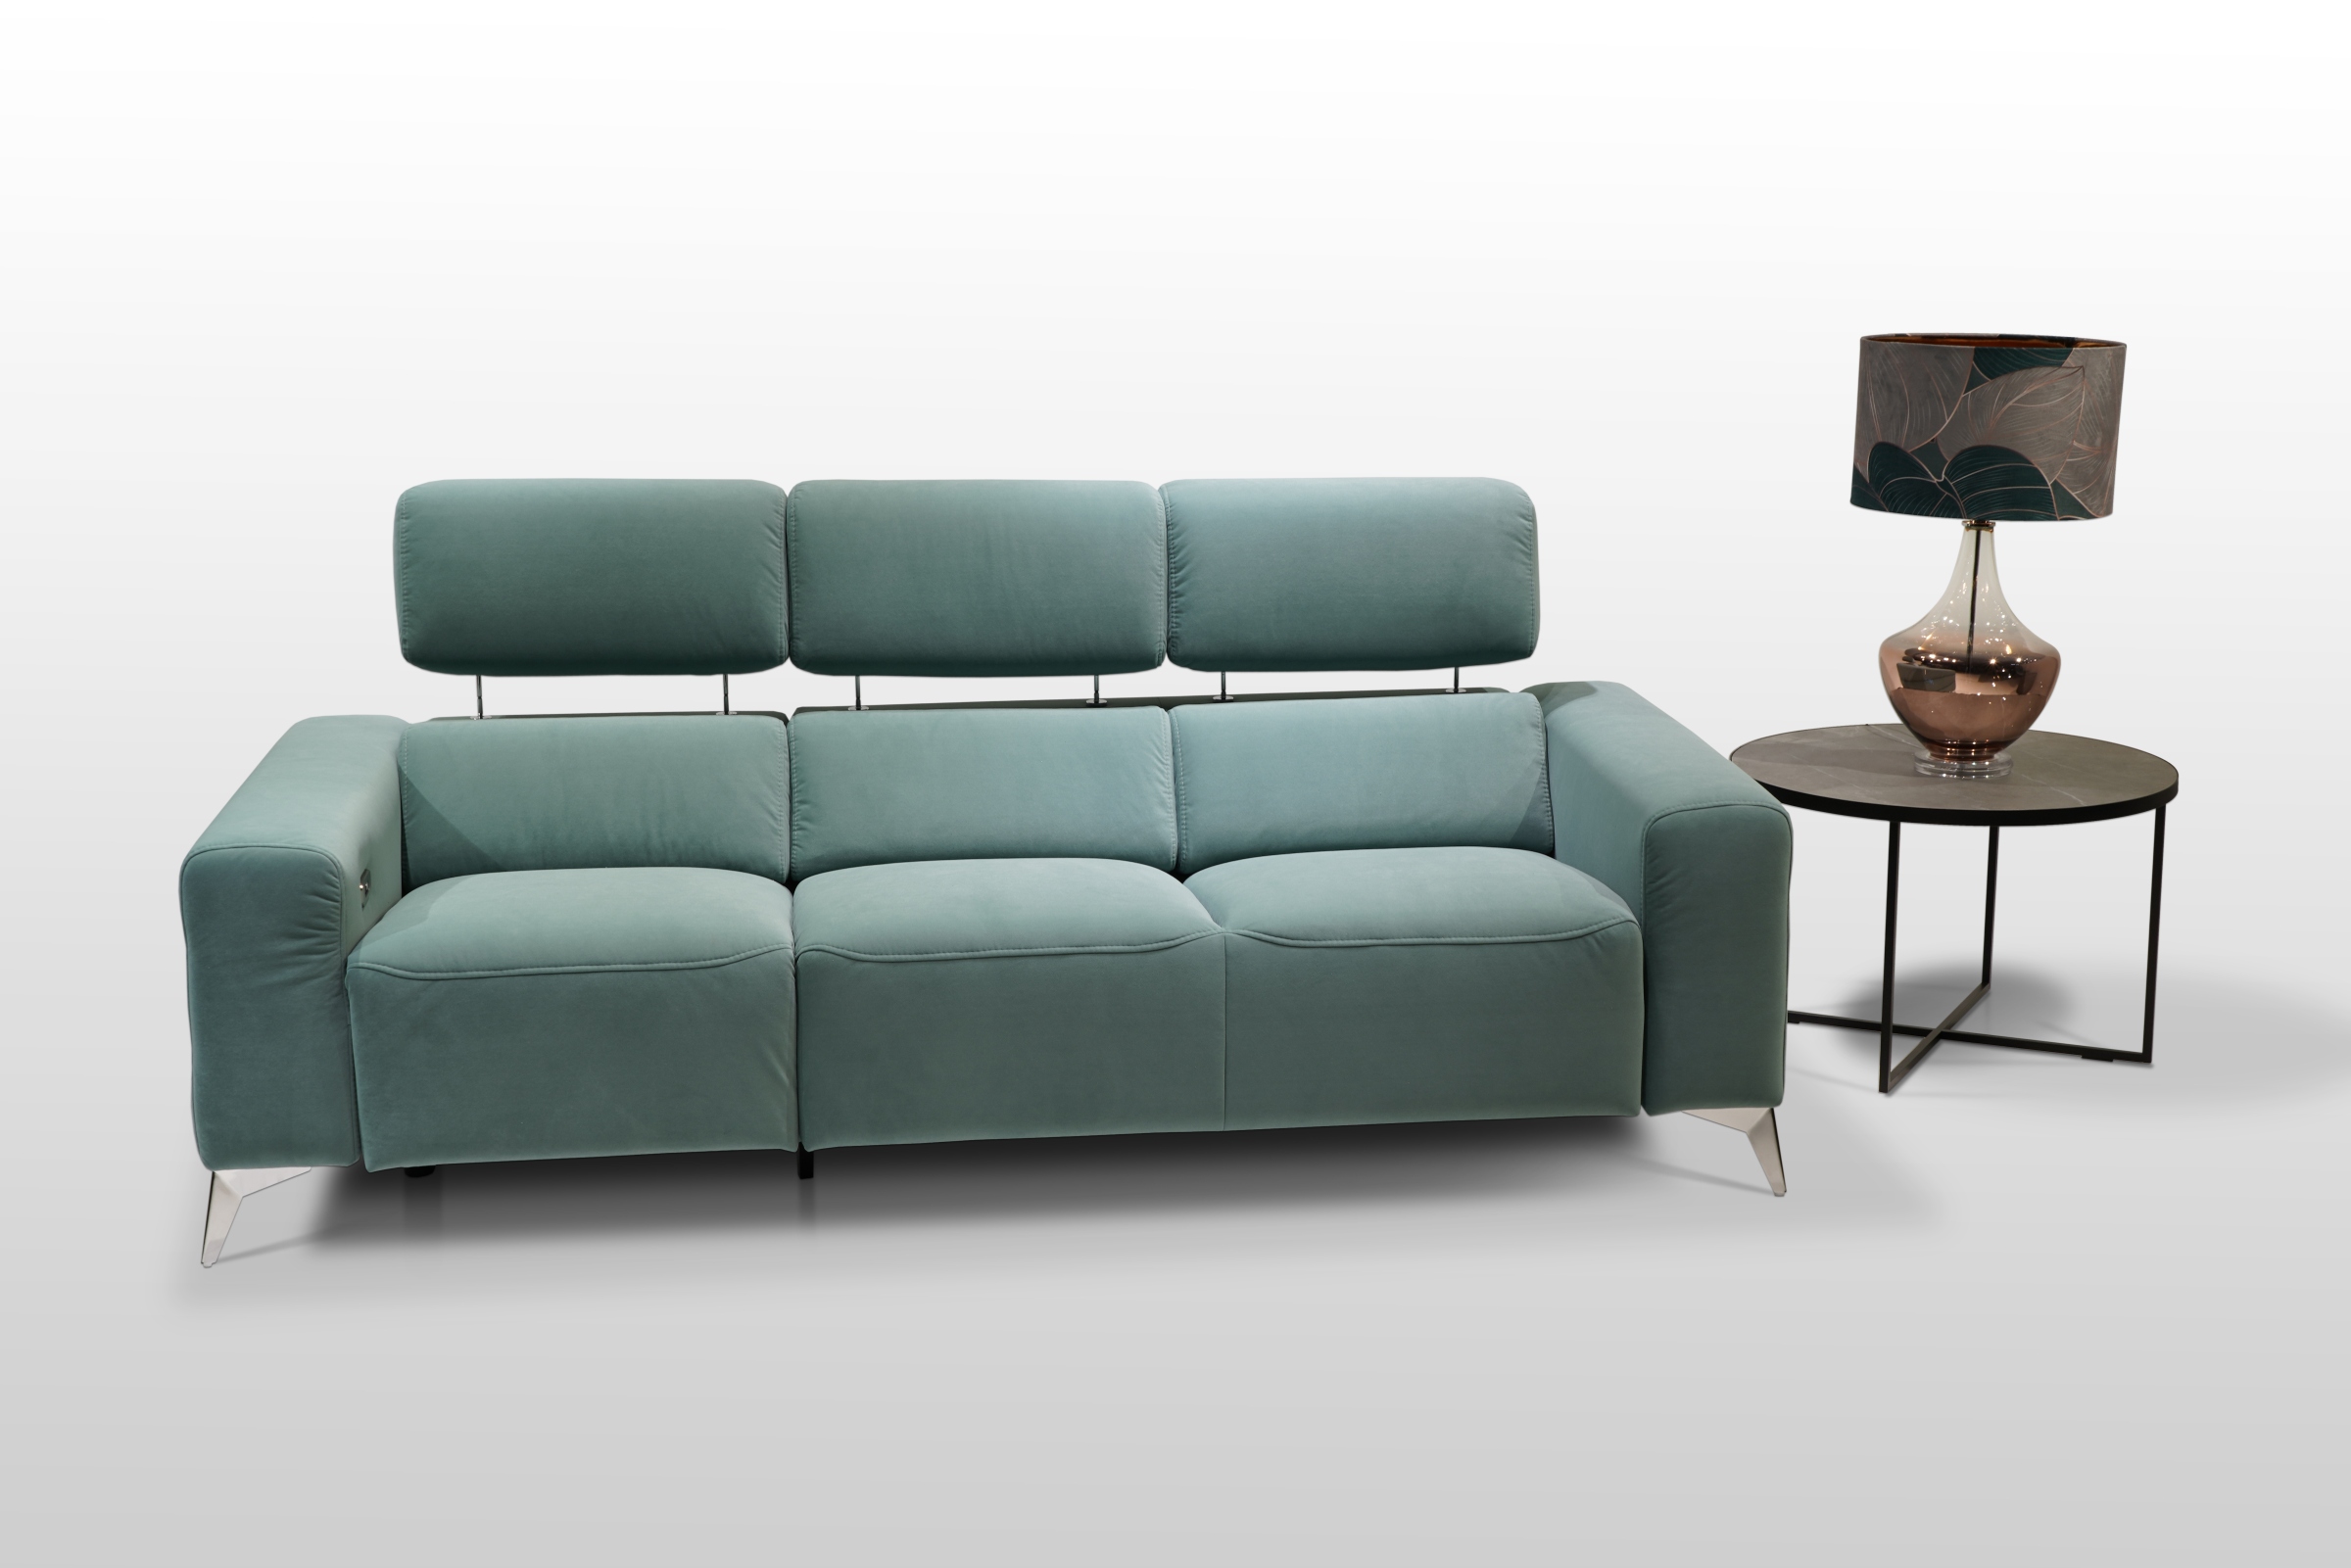 Kanapa do nowoczesego salonu dla trzech osób. Sofa z plamoodpornej niebieskiej tkaniny Aqua Clean